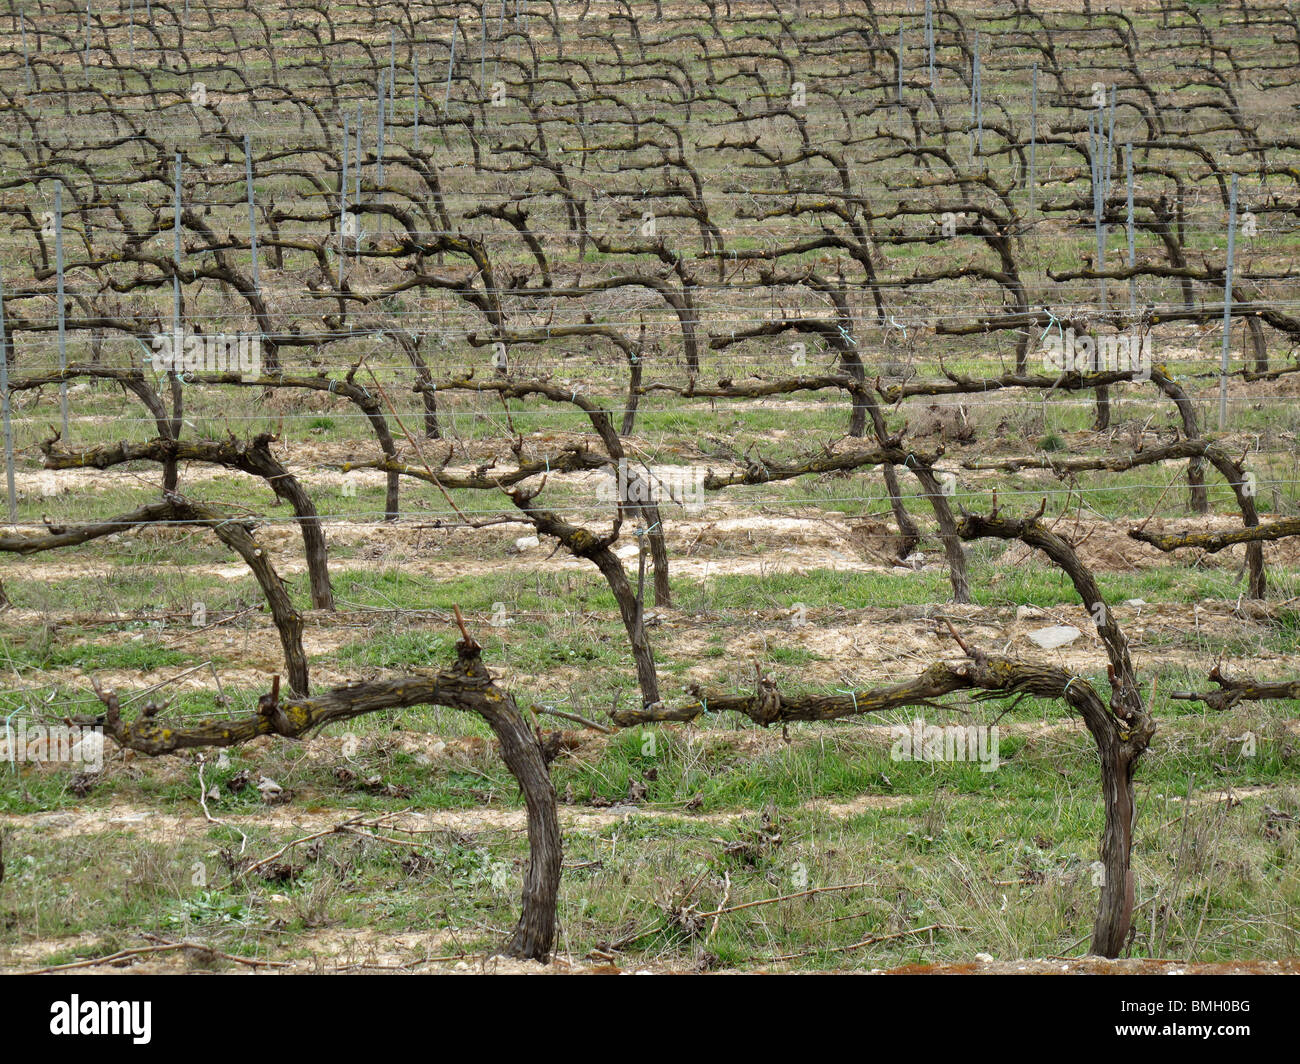 Viñedos en Navarra. España. CAMINO DE SANTIAGO. Vineyards in Navarre. Spain. WAY OF ST JAMES. Stock Photo